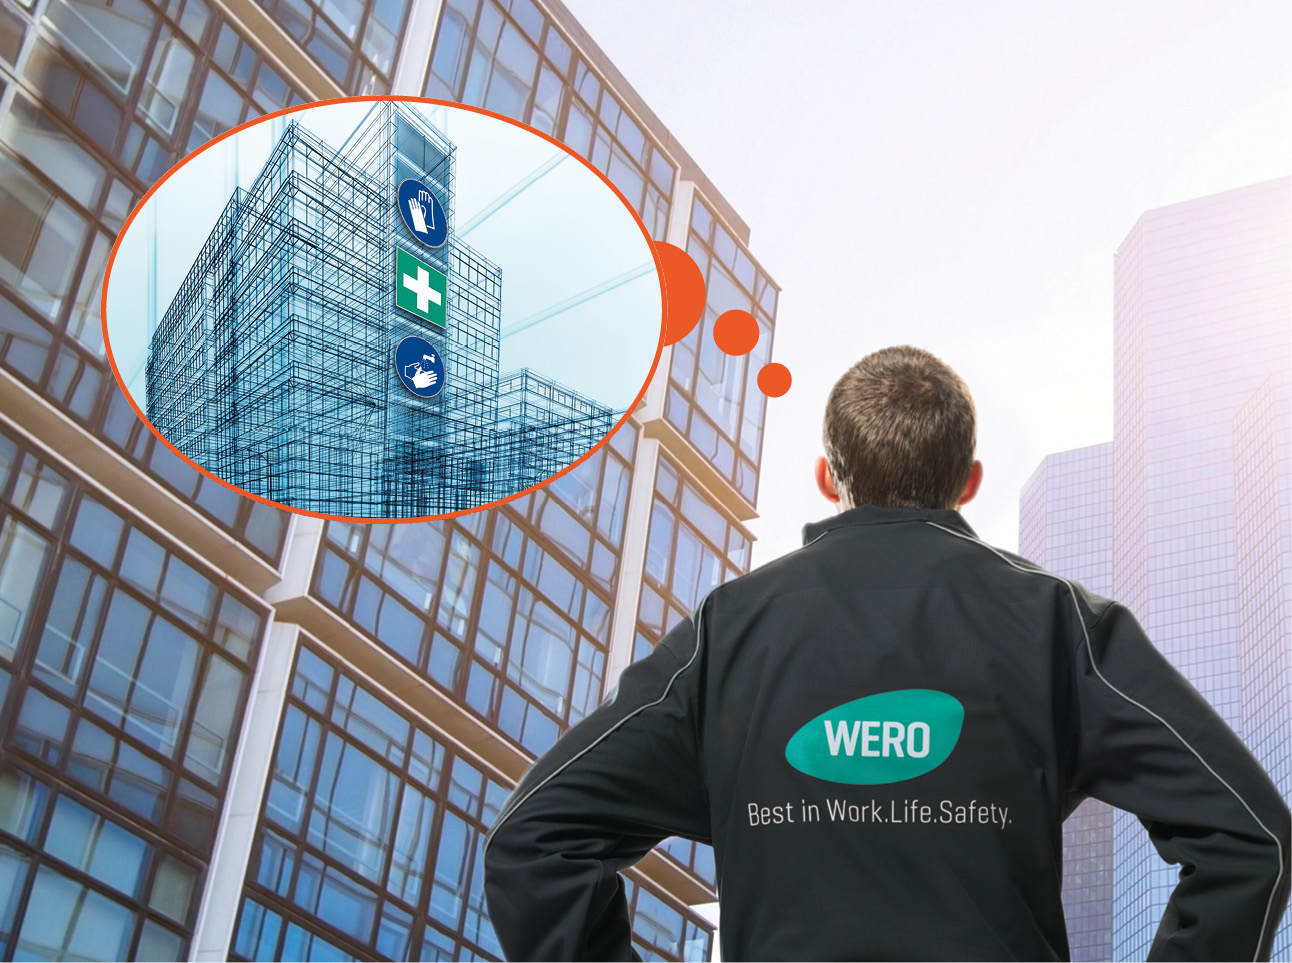 Abbildung eines WERO Mitarbeitenden, der mit dem Rücken zur Kamera steht und eine Jacke mit WERO-Branding trägt